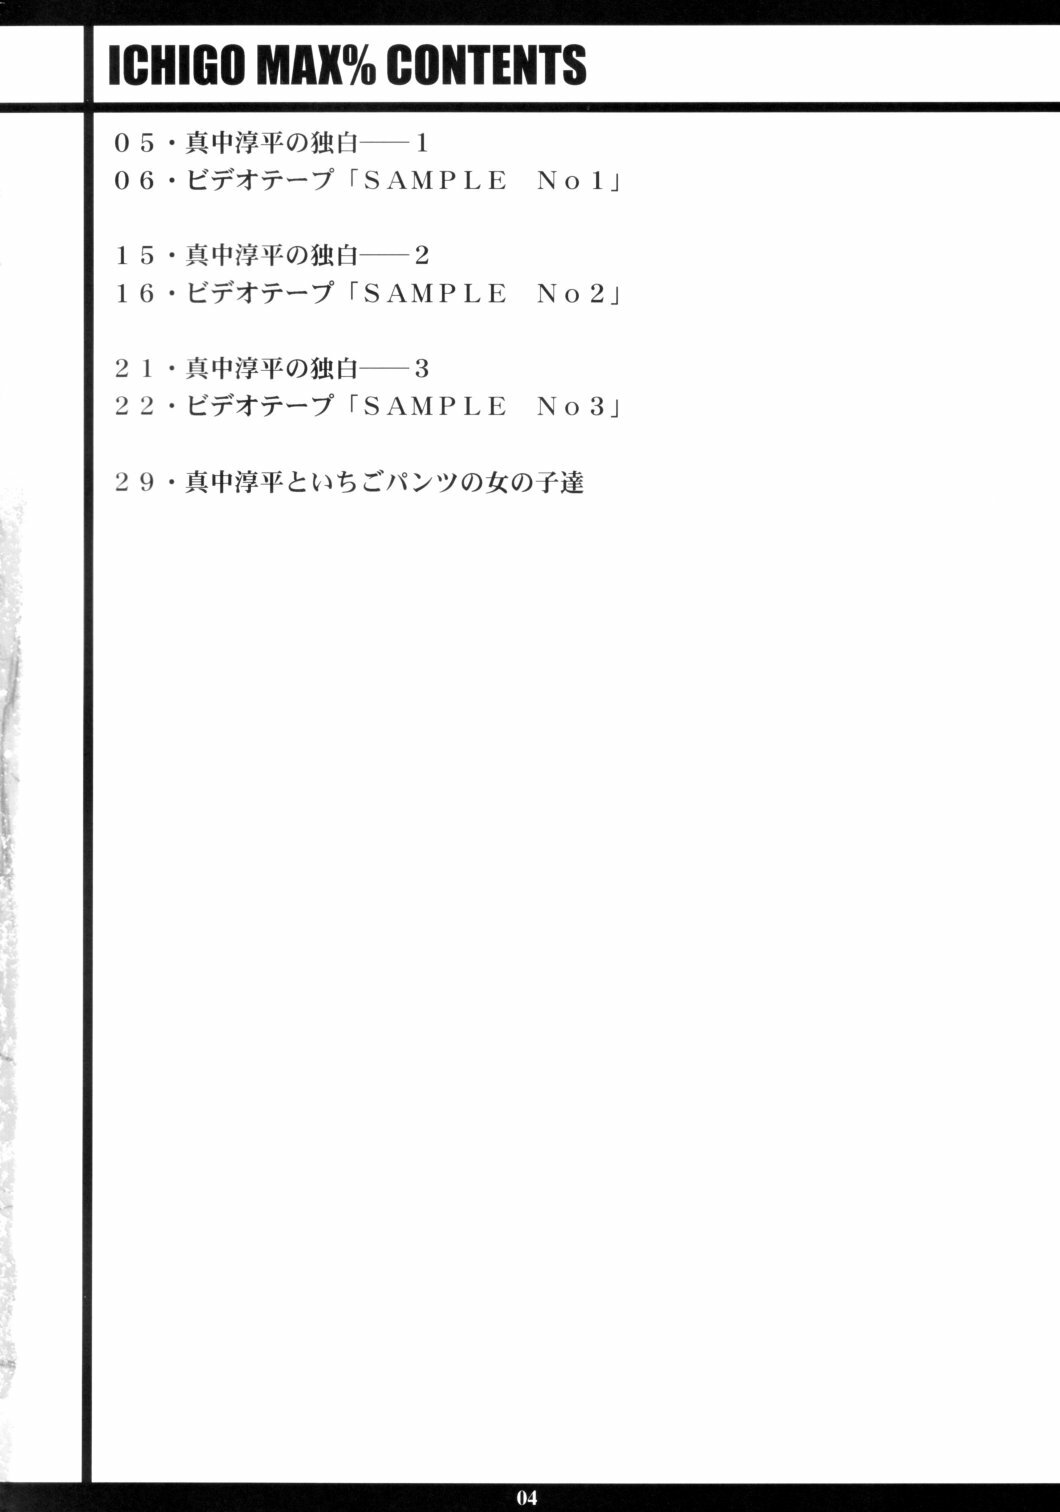 [M (Amano Ameno)] Ichigo MAX% (Ichigo 100%) [2003-02] page 3 full